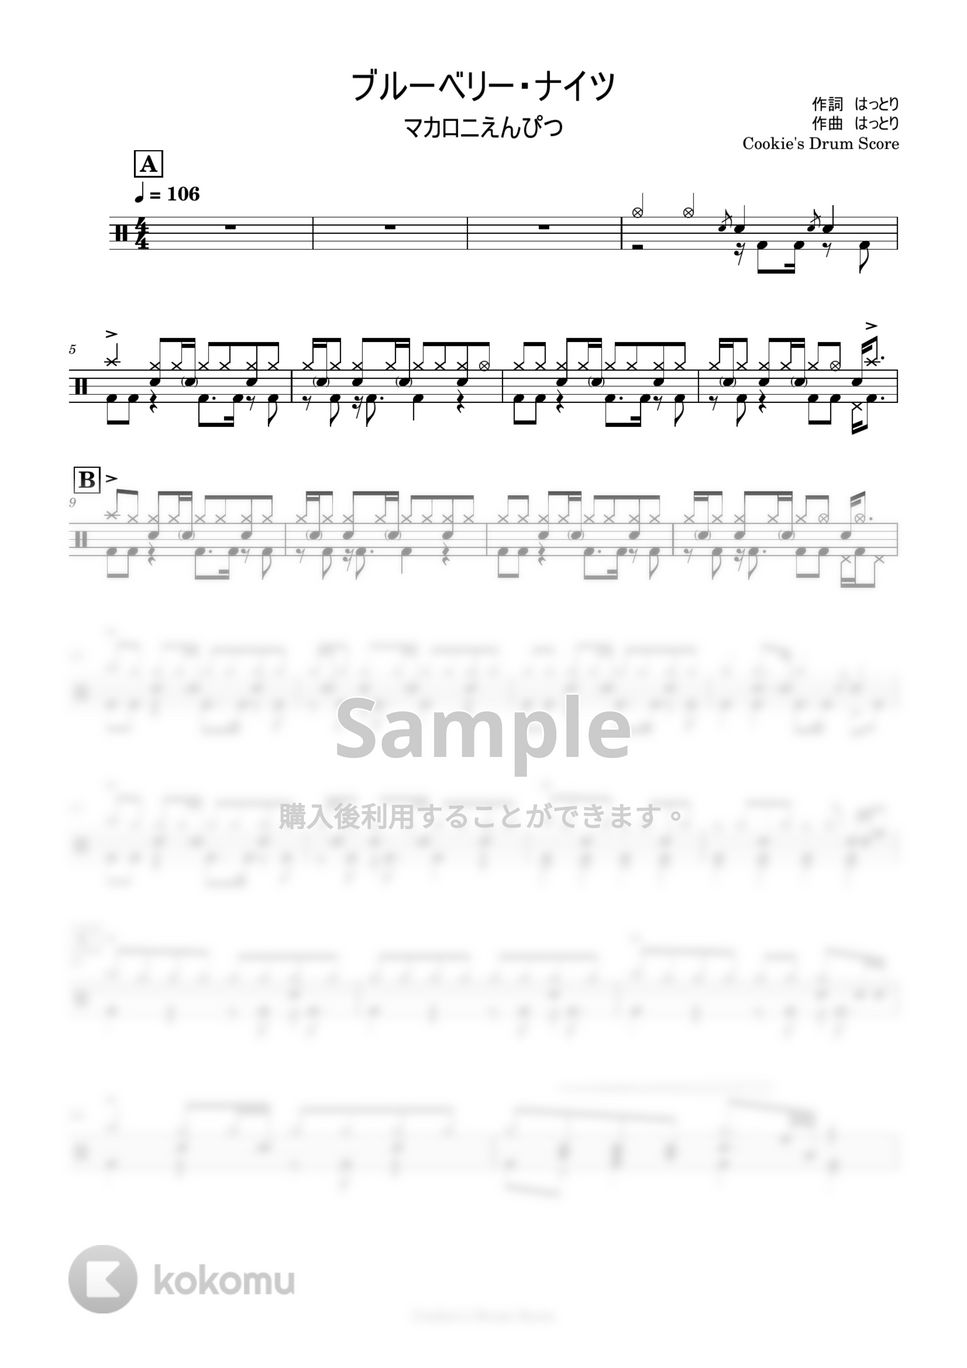 マカロニえんぴつ - ブルーベリー・ナイツ by Cookie's Drum Score